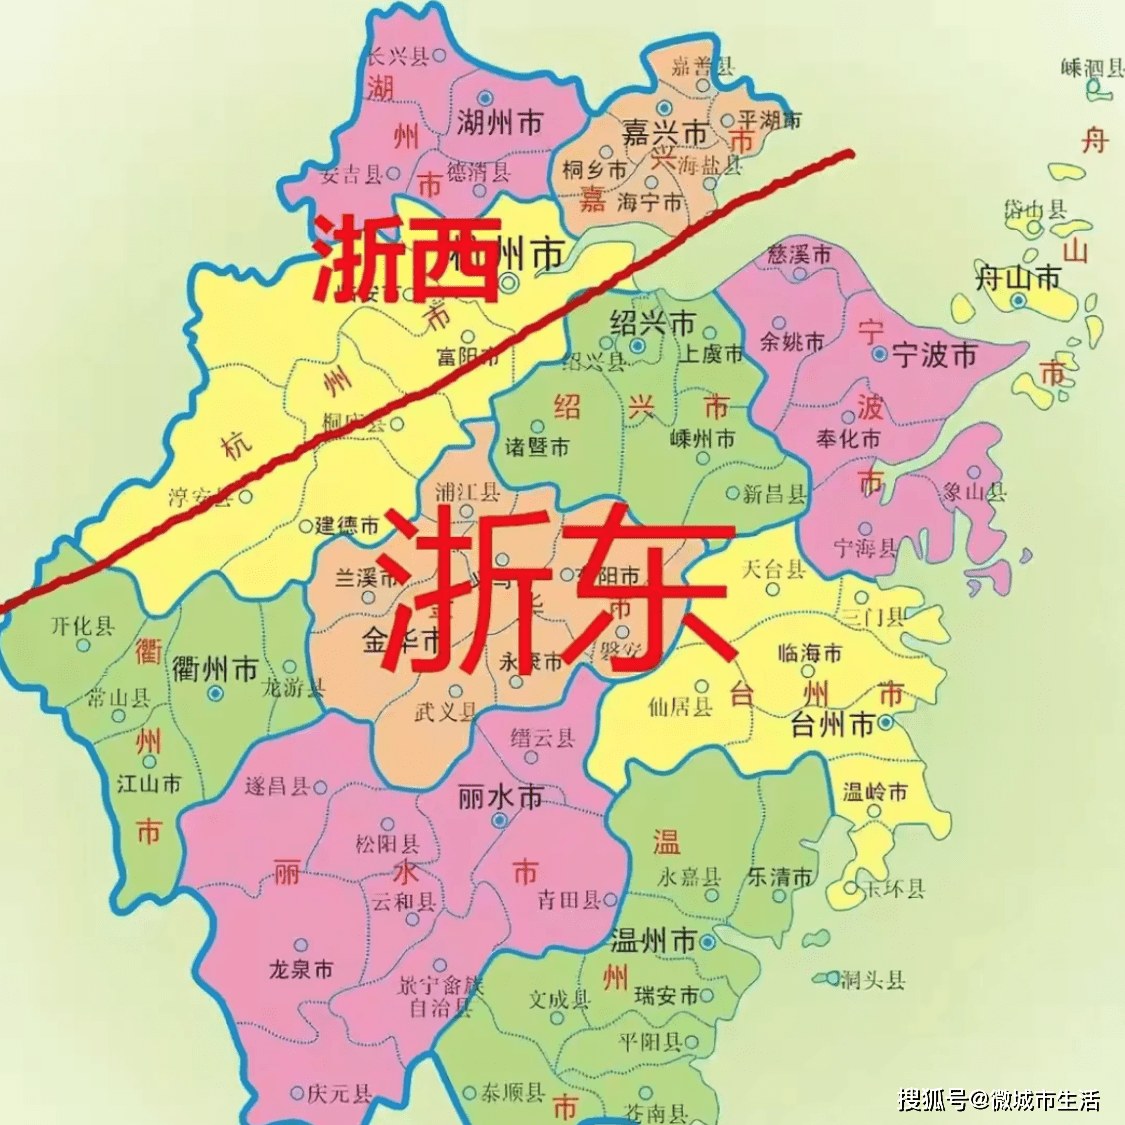 说说浙江是个怎样神奇的省份？